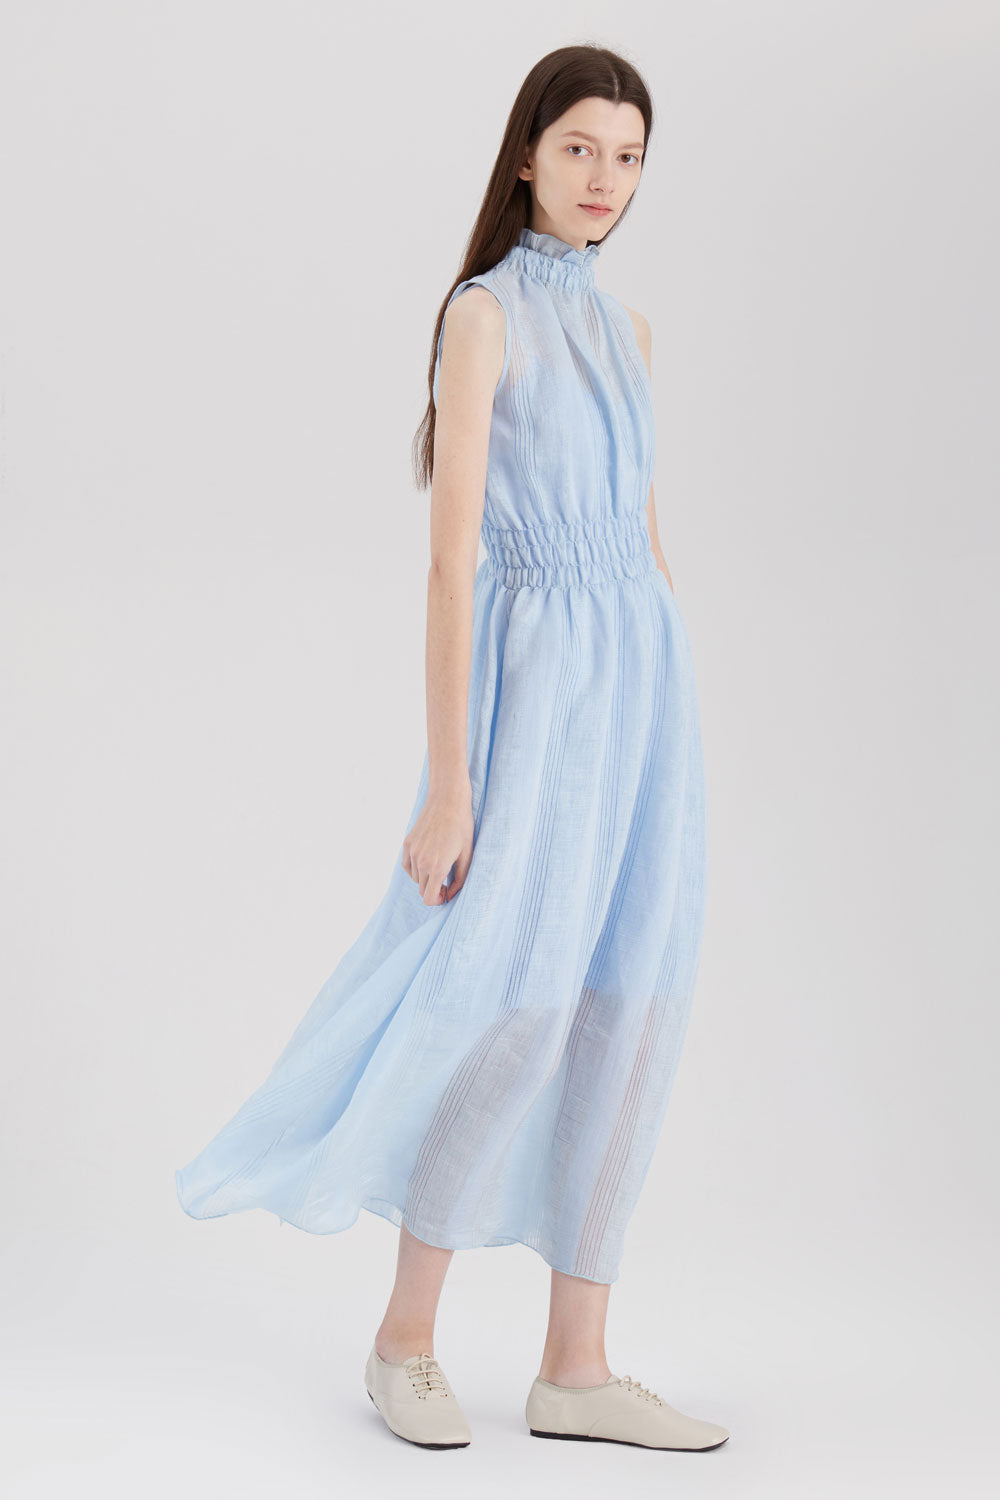 Linen Rayon Sheer Dress